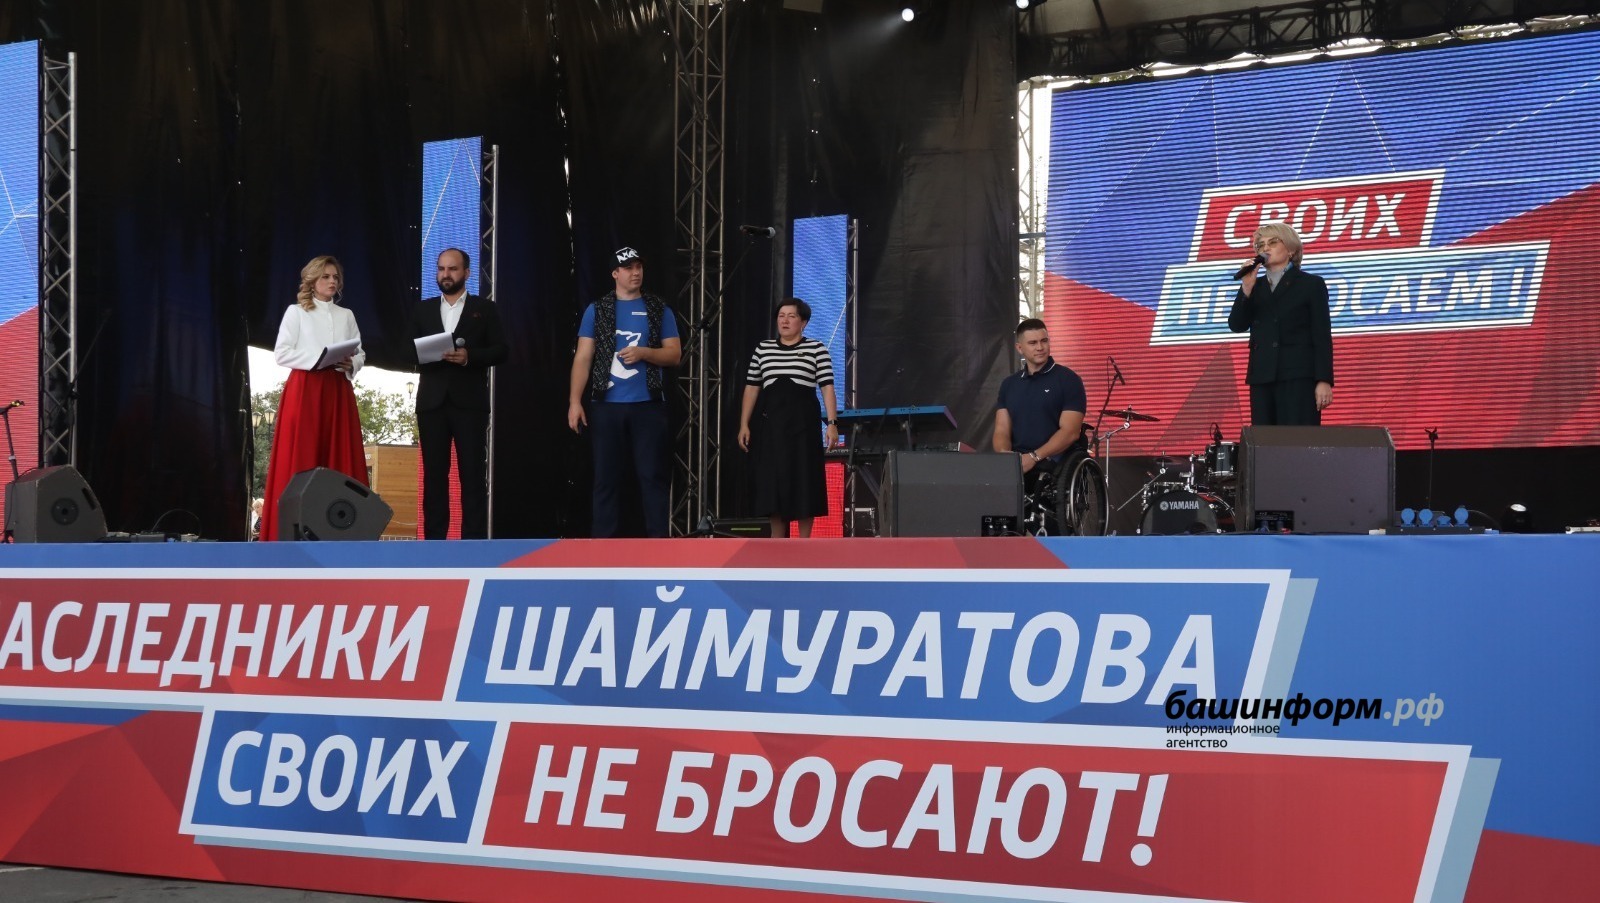 Митинг-концерт «Потомки Шаймуратова своих не бросают!» в столице Башкирии собрал более 20 тысяч зрителей